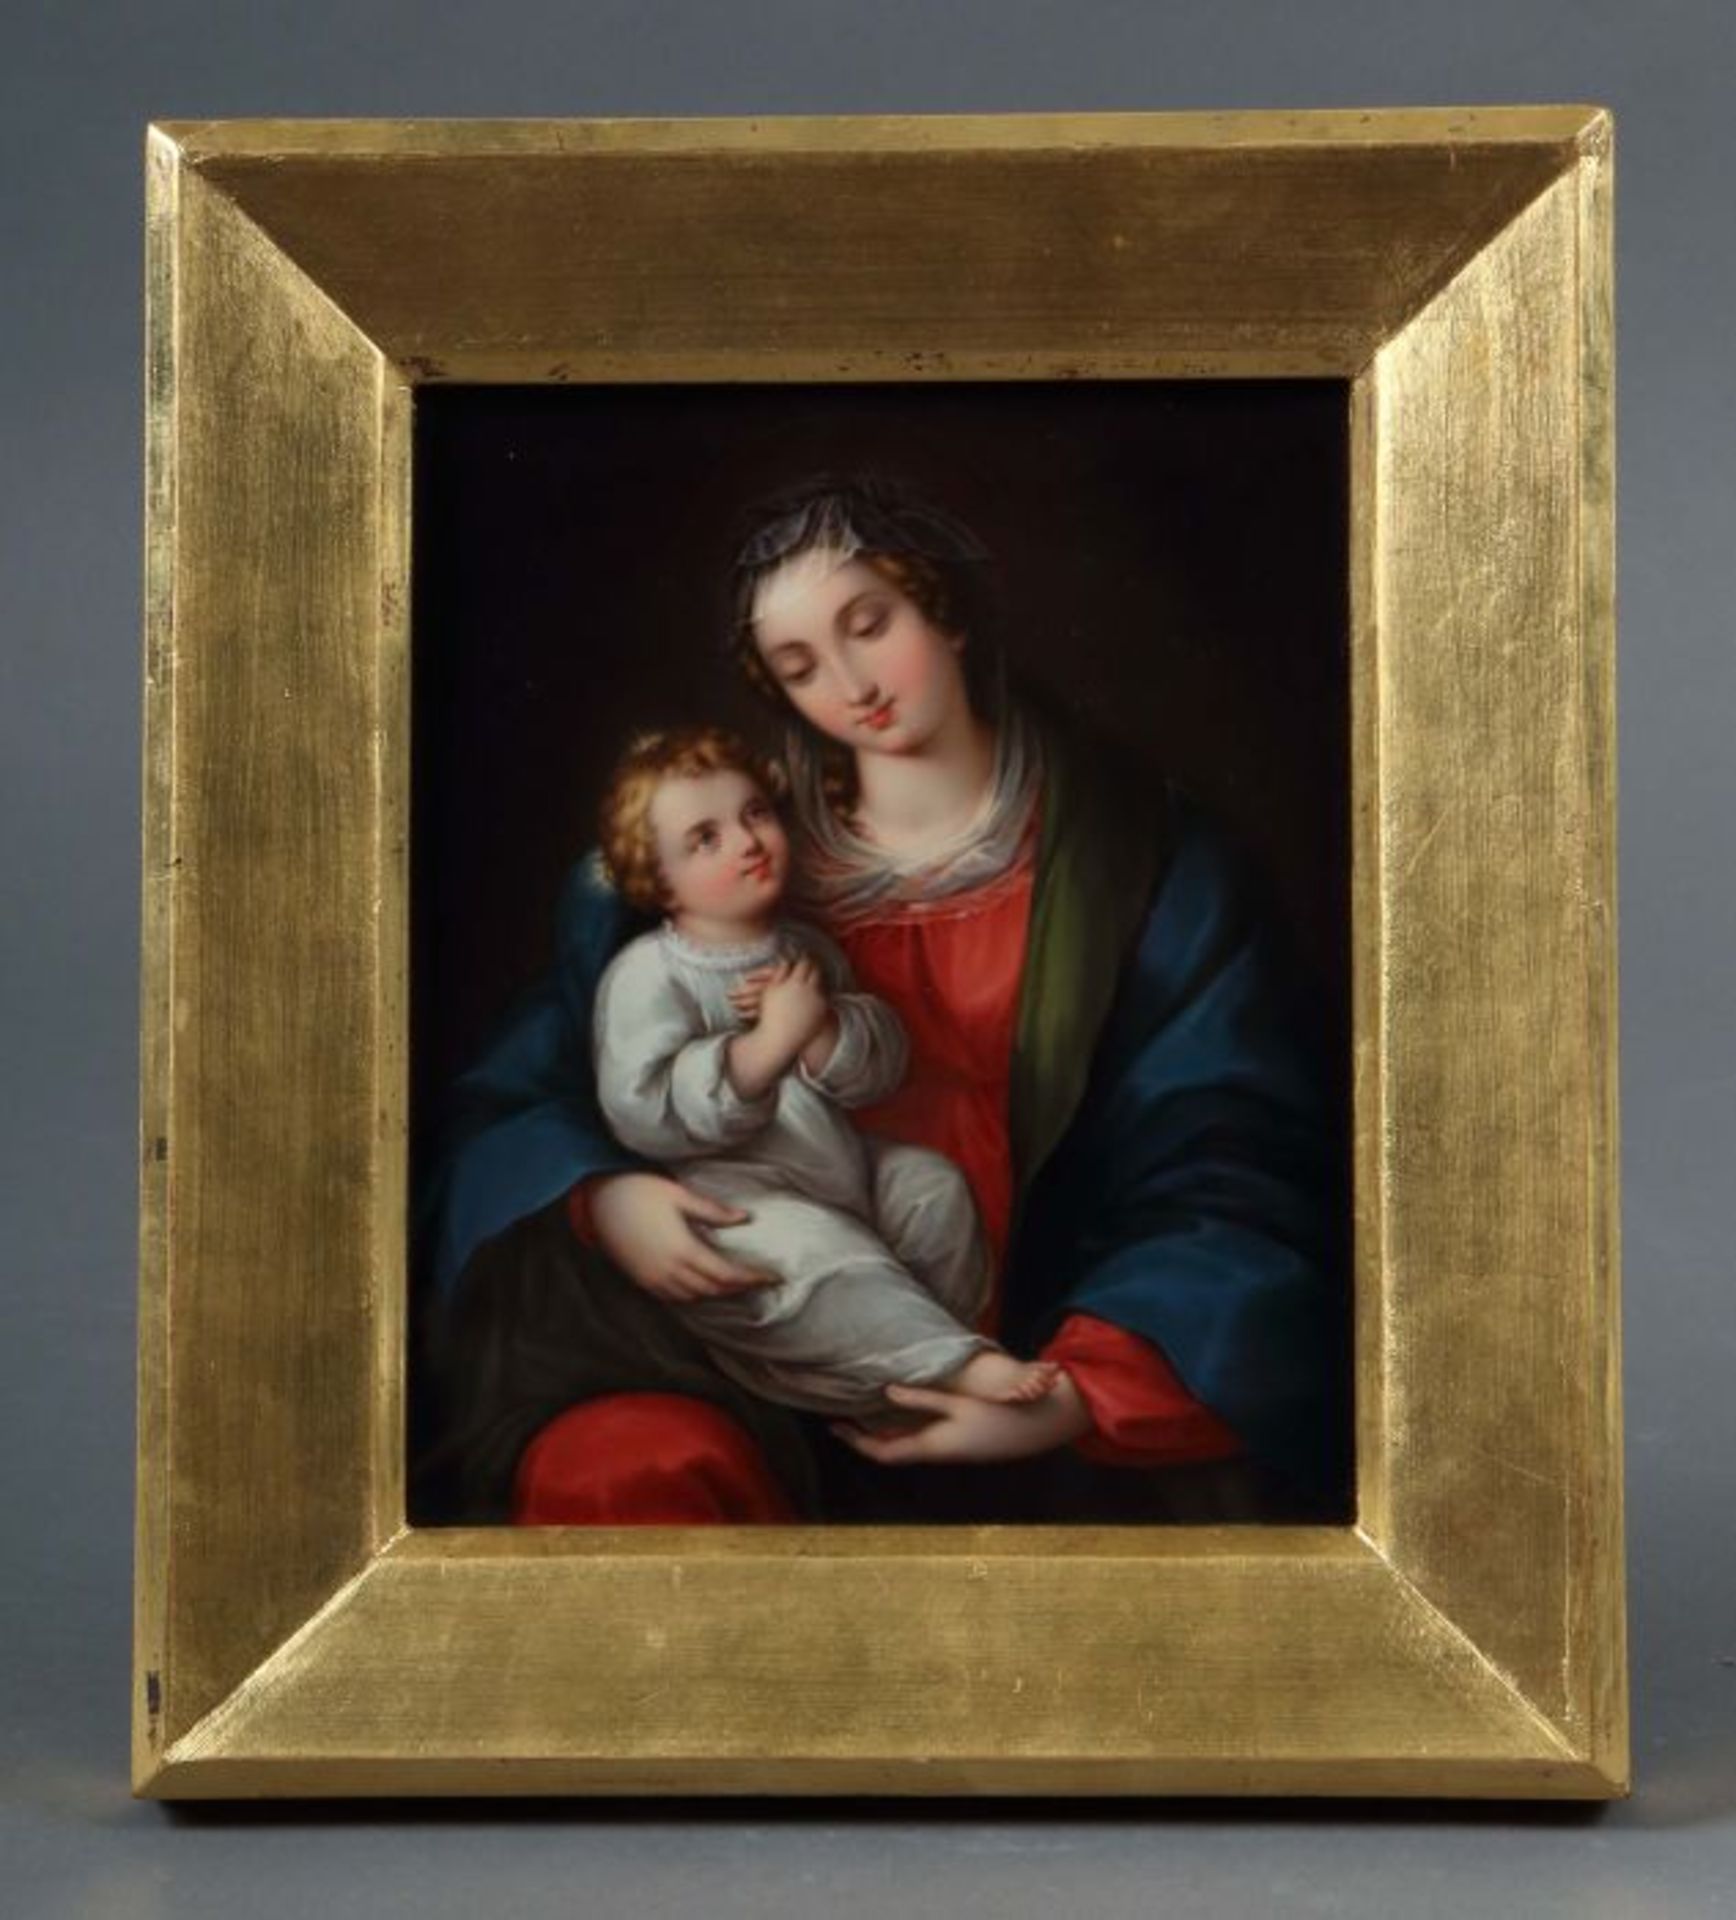 Bildplatte "Madonna mit Kind" Preußen, Ende 19. Jh., Porzellan, polychrome feine Aufglasurbemalung